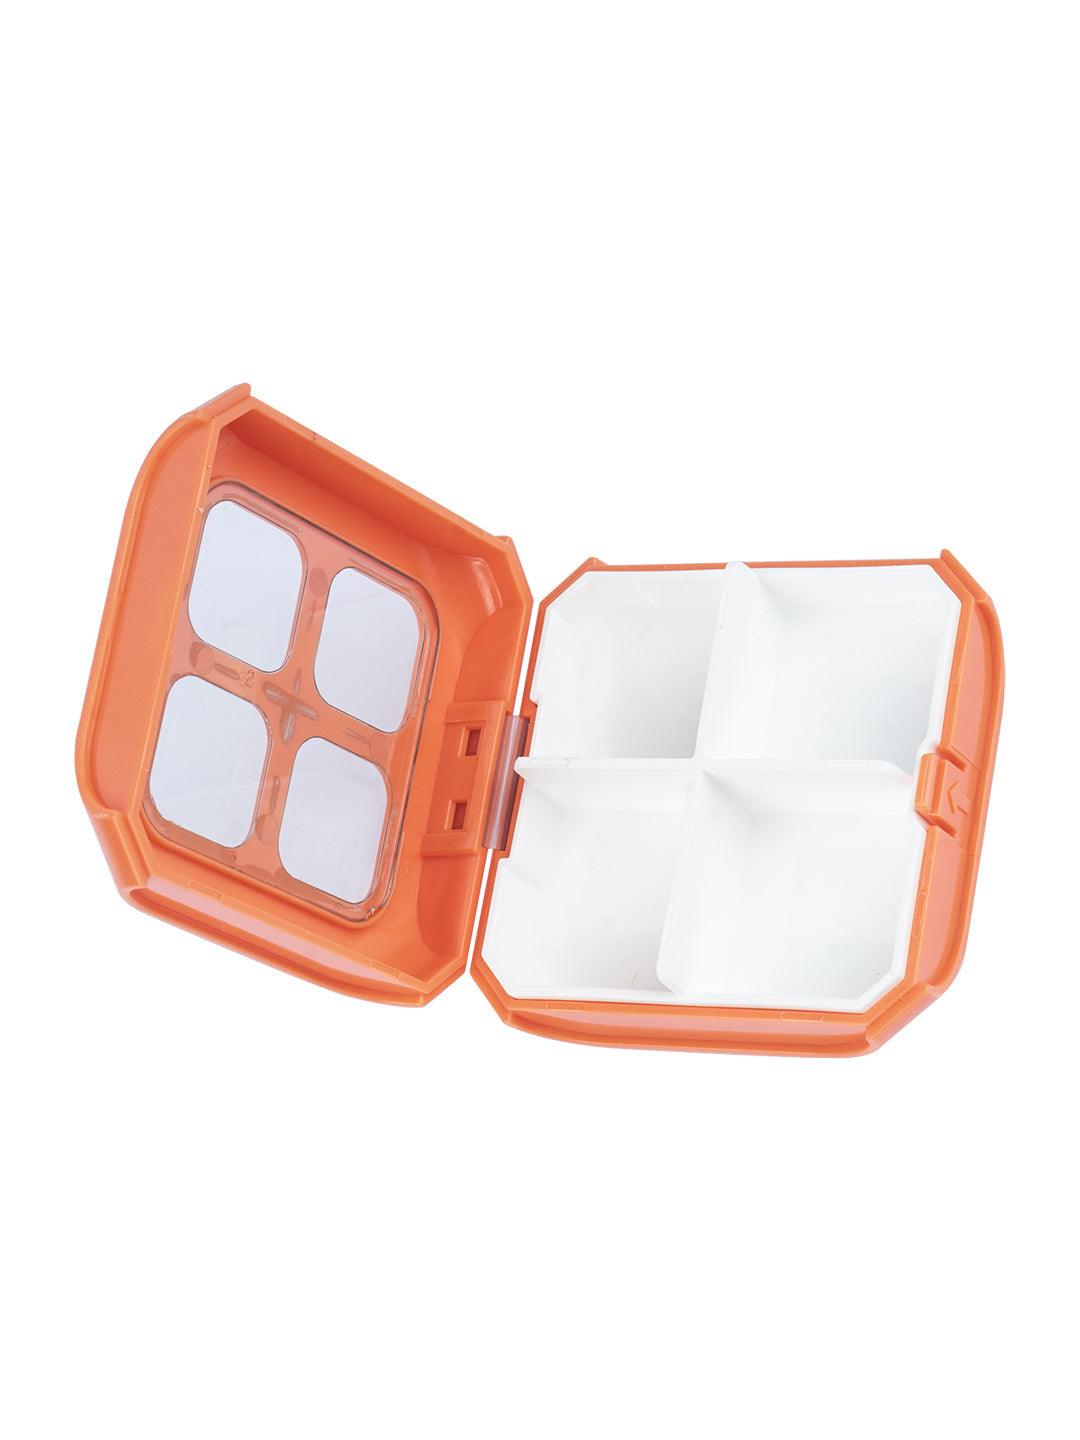 Pill Medicine Organizer Storage Box with 4 Compartments